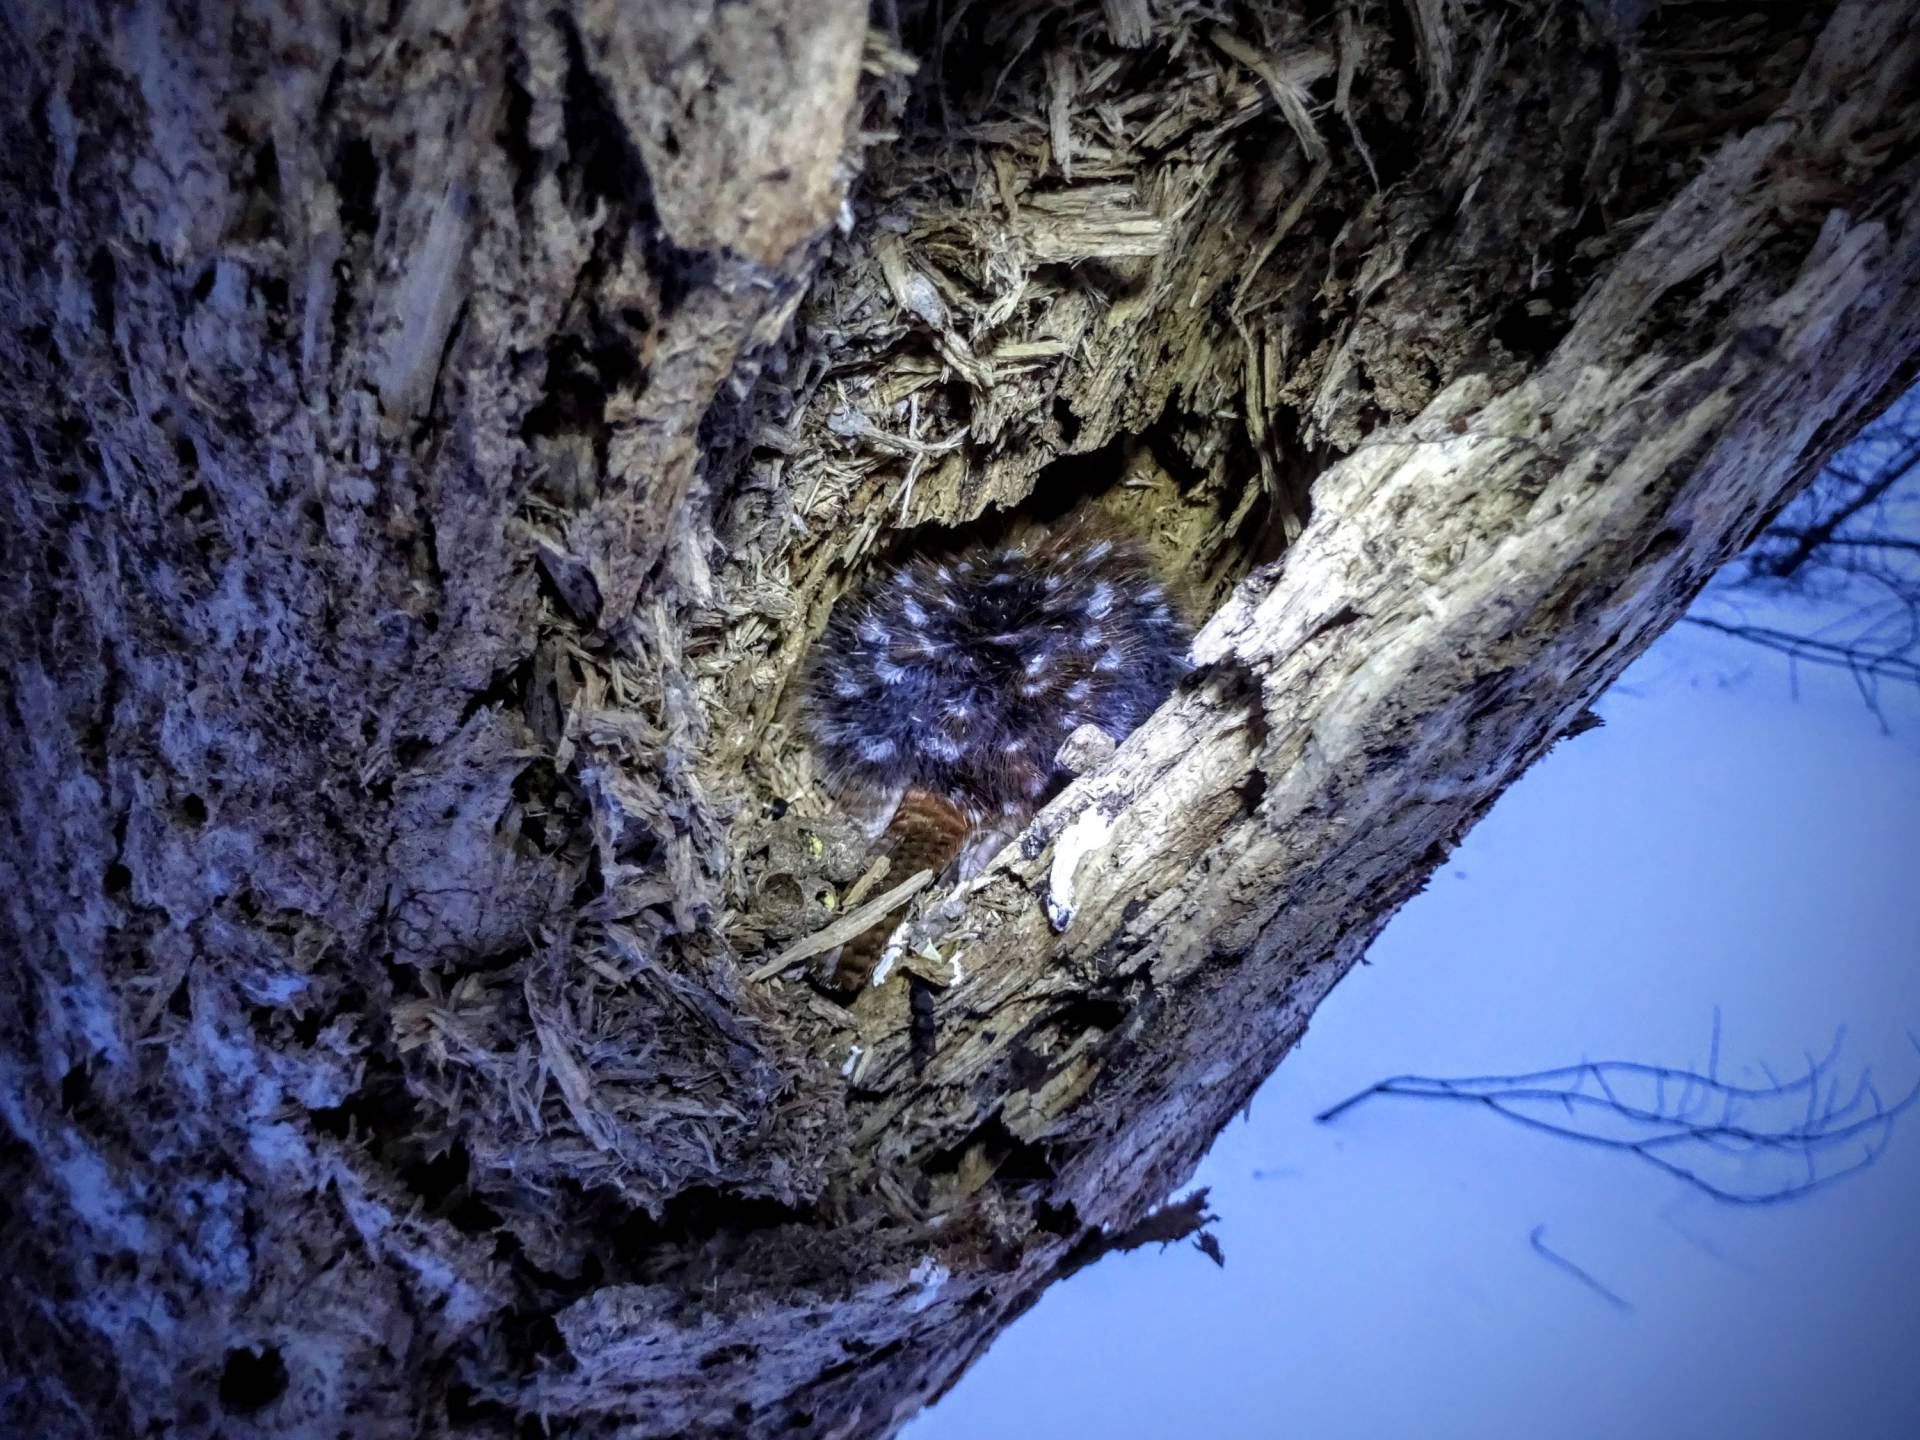 Downy woodpecker in a tree trunk nest